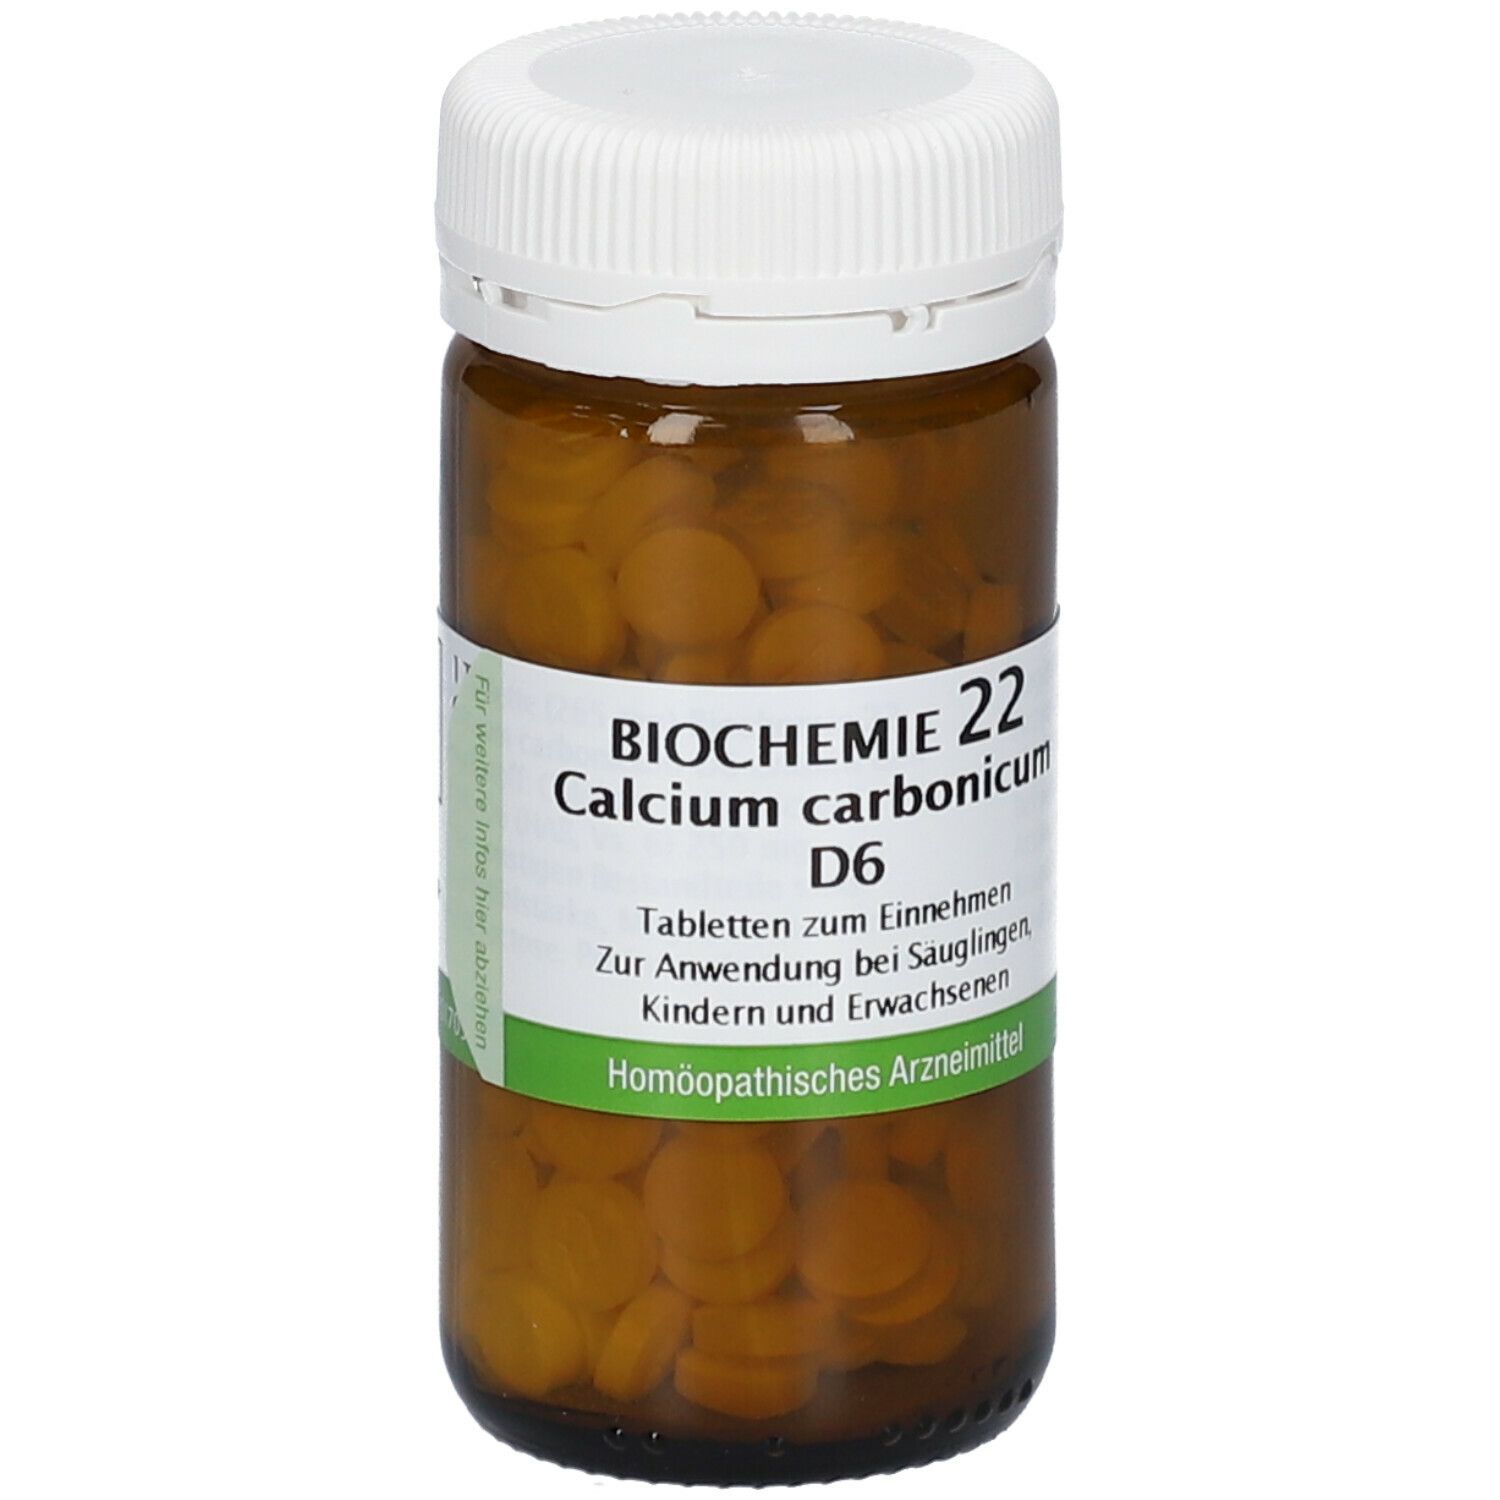 BIOCHEMIE 22 Calcium carbonicum D 6